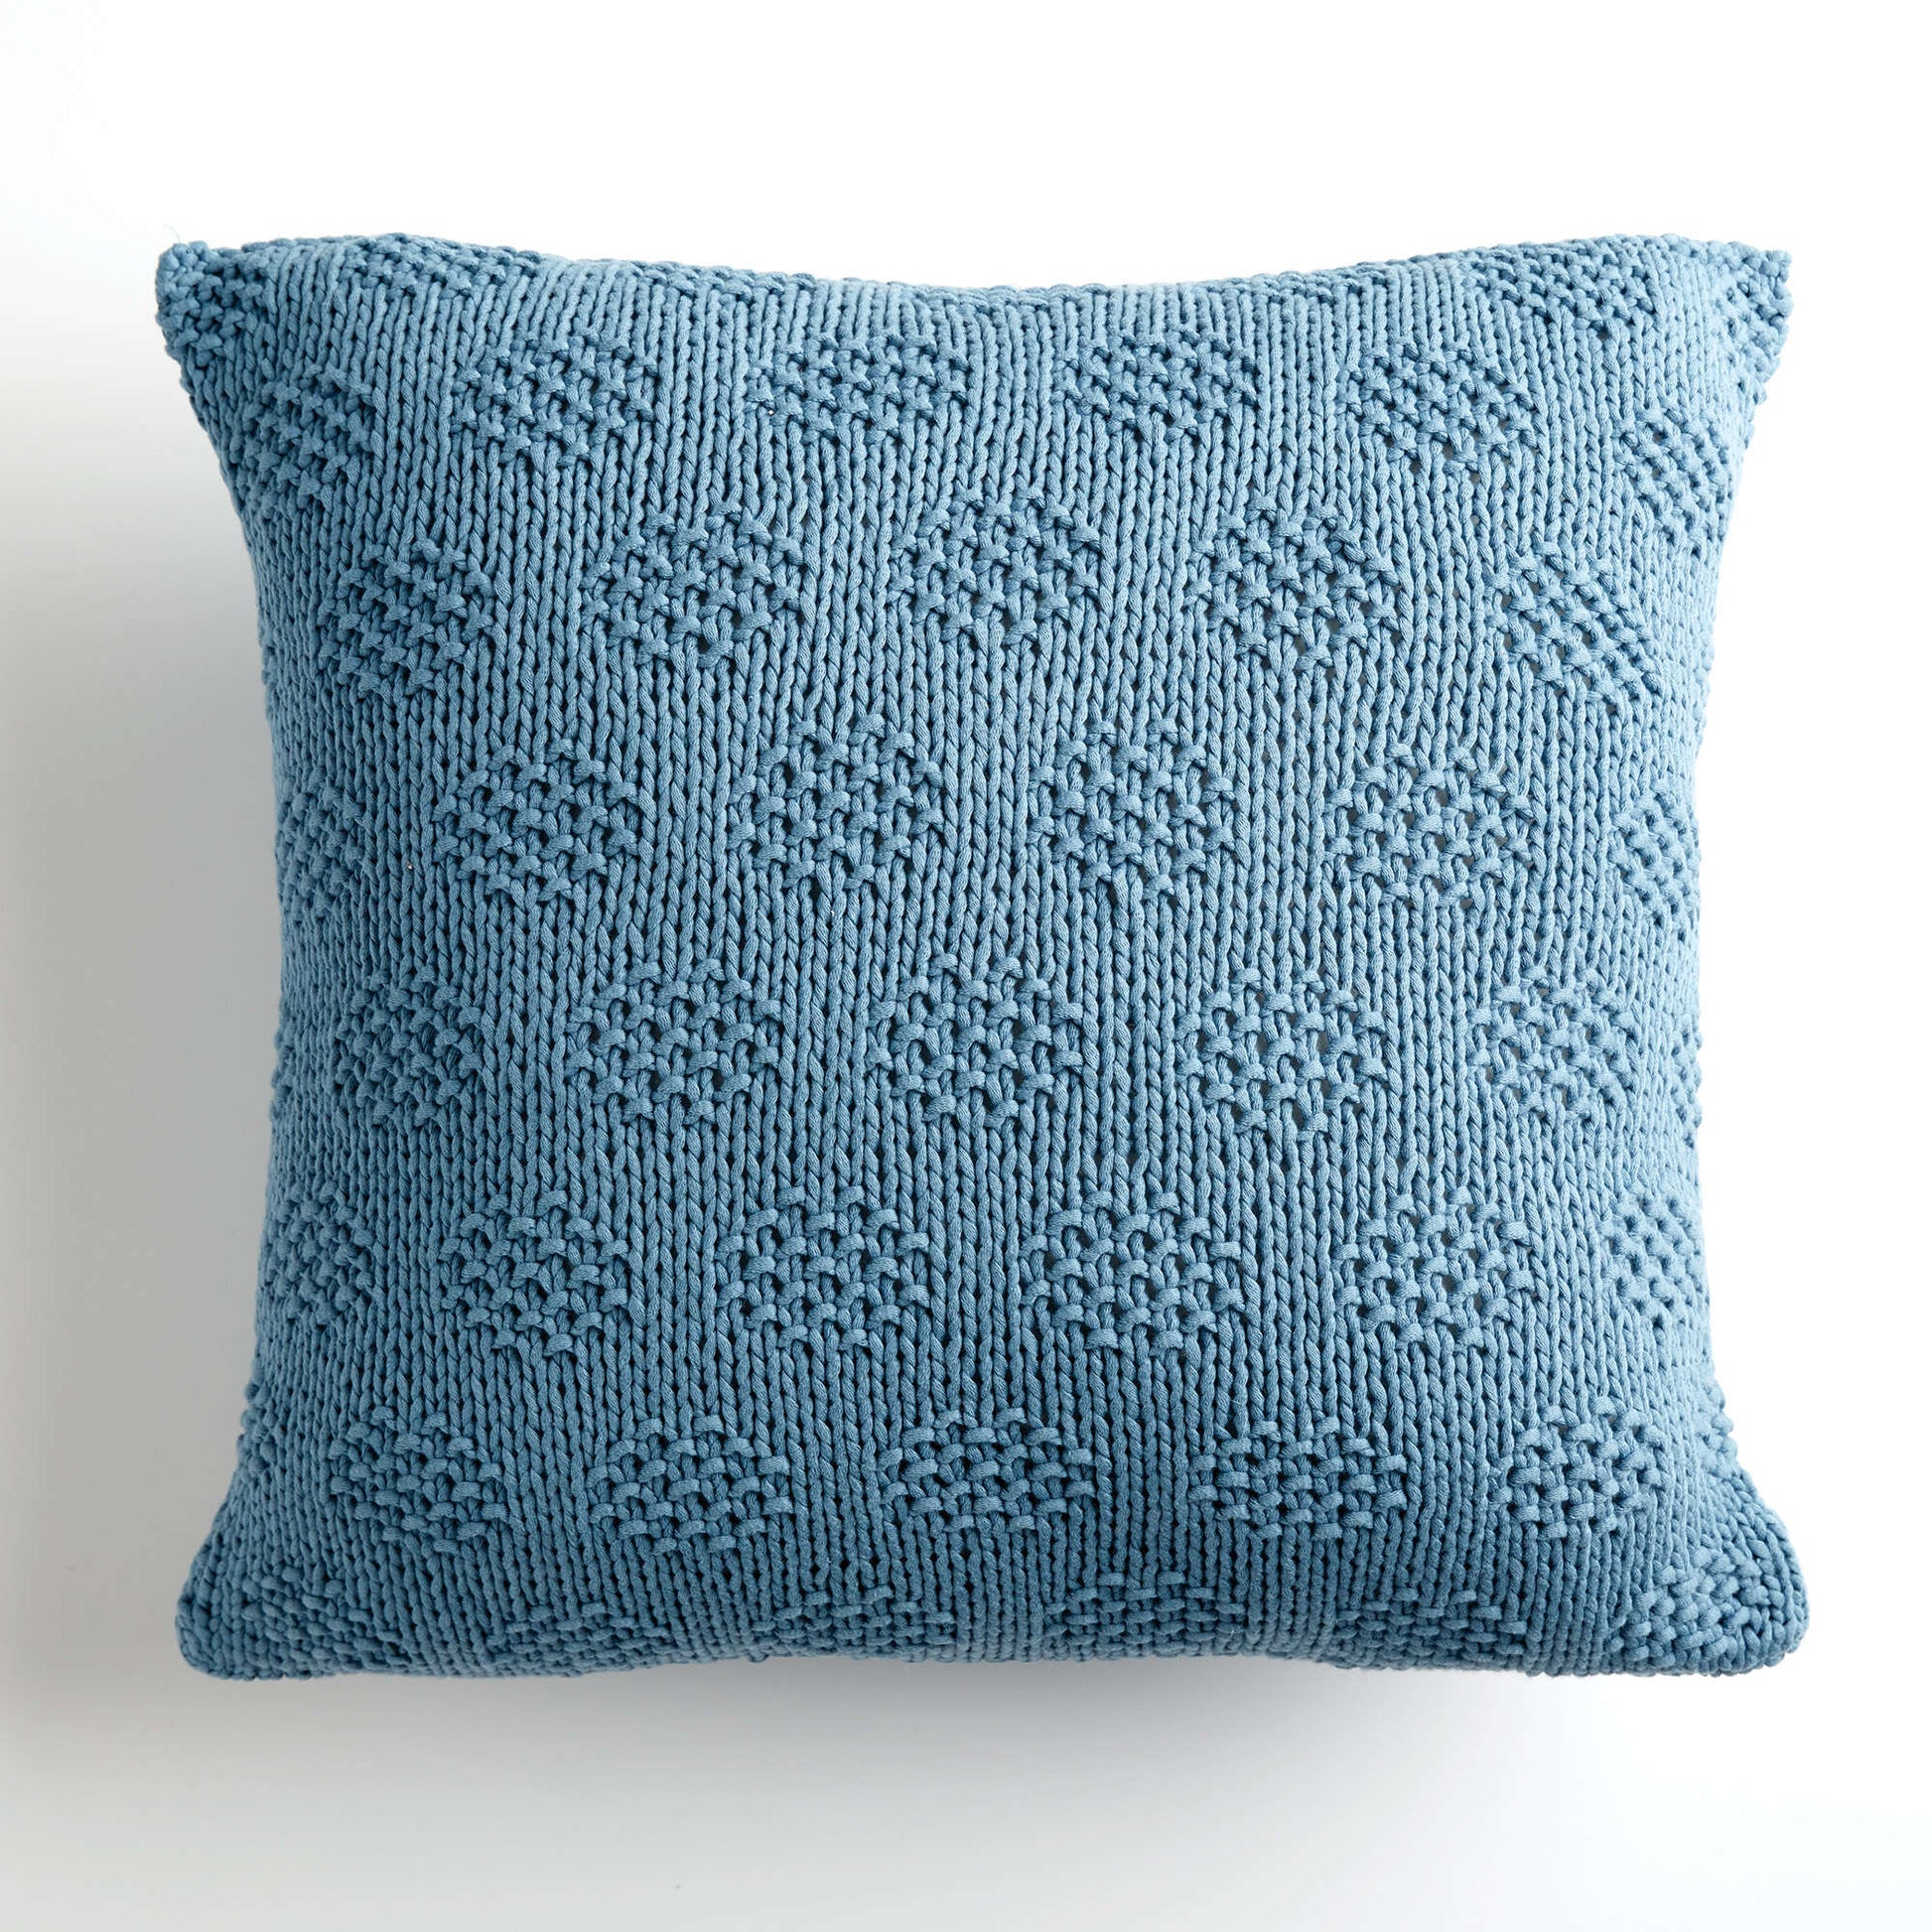 Free Bernat Mossy Dots Knit Pillow Pattern